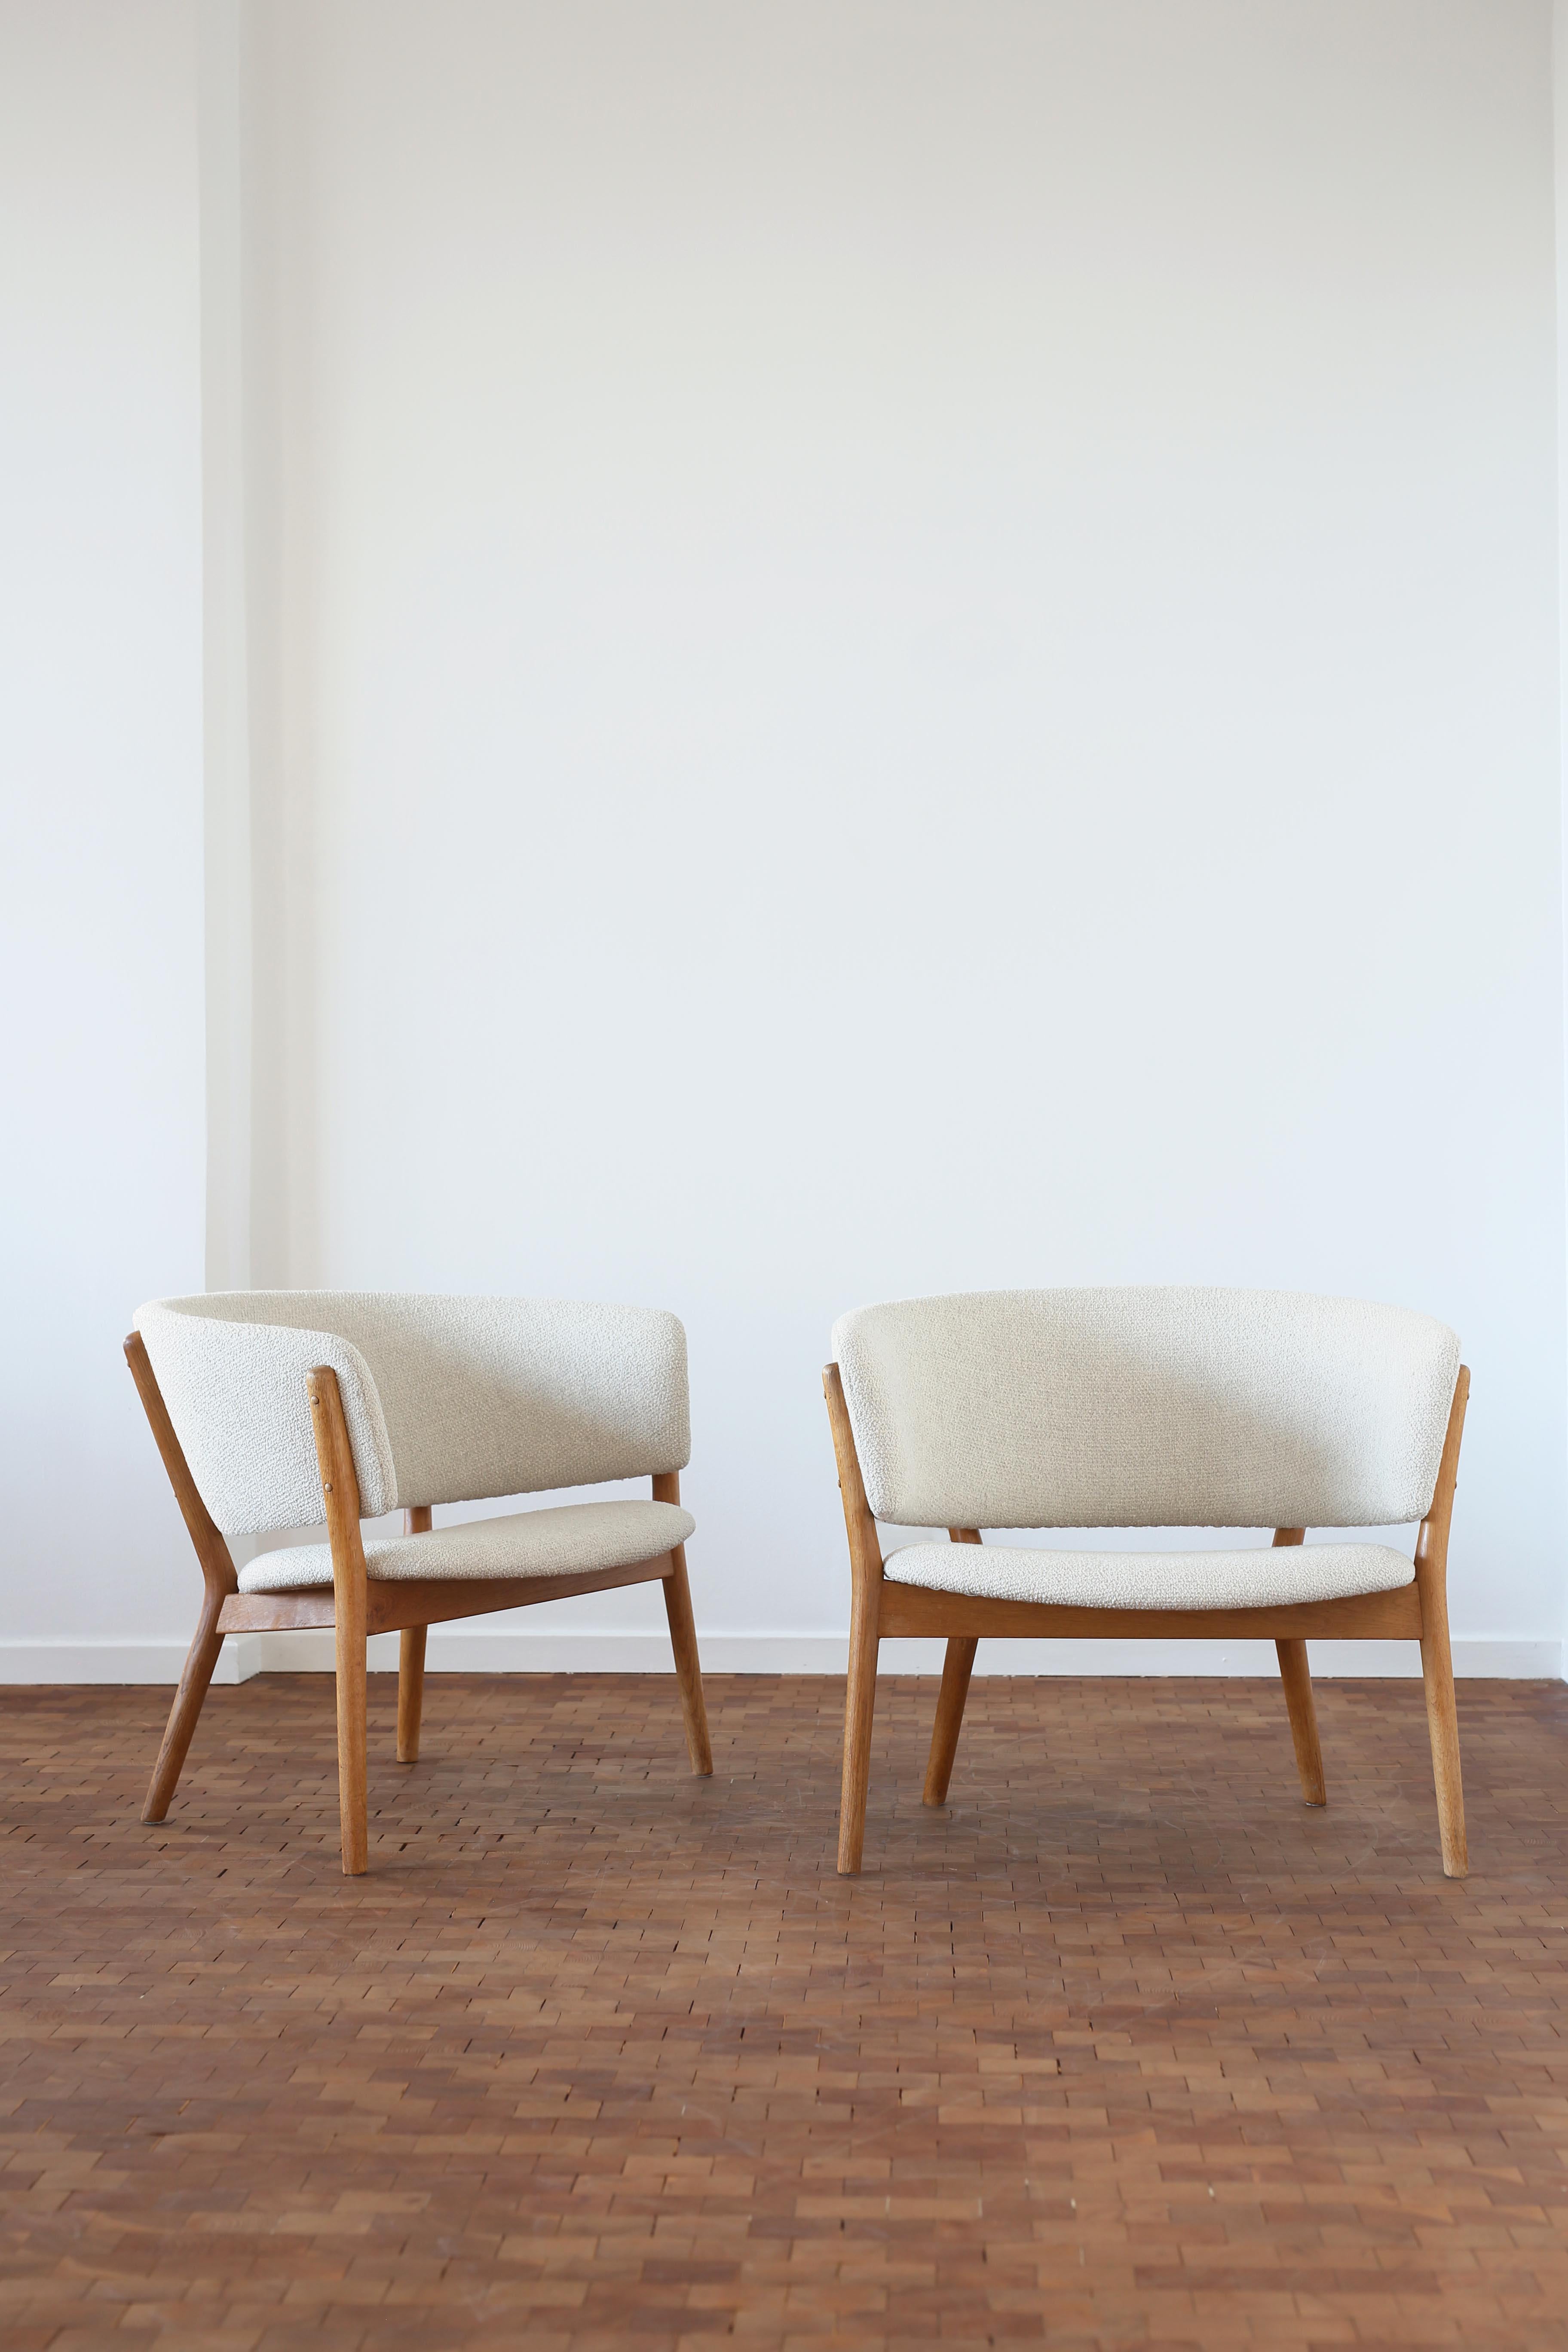 Paire de fauteuils en chêne Nanna Ditzel, recouverts d'un tissu en laine claire. 

Conçu par Ditzel en 1952, fabriqué par Søren Willadsen, Danemark, modèle ND83.

Très bon état. 

Également disponible en chaise simple, sur demande.
 